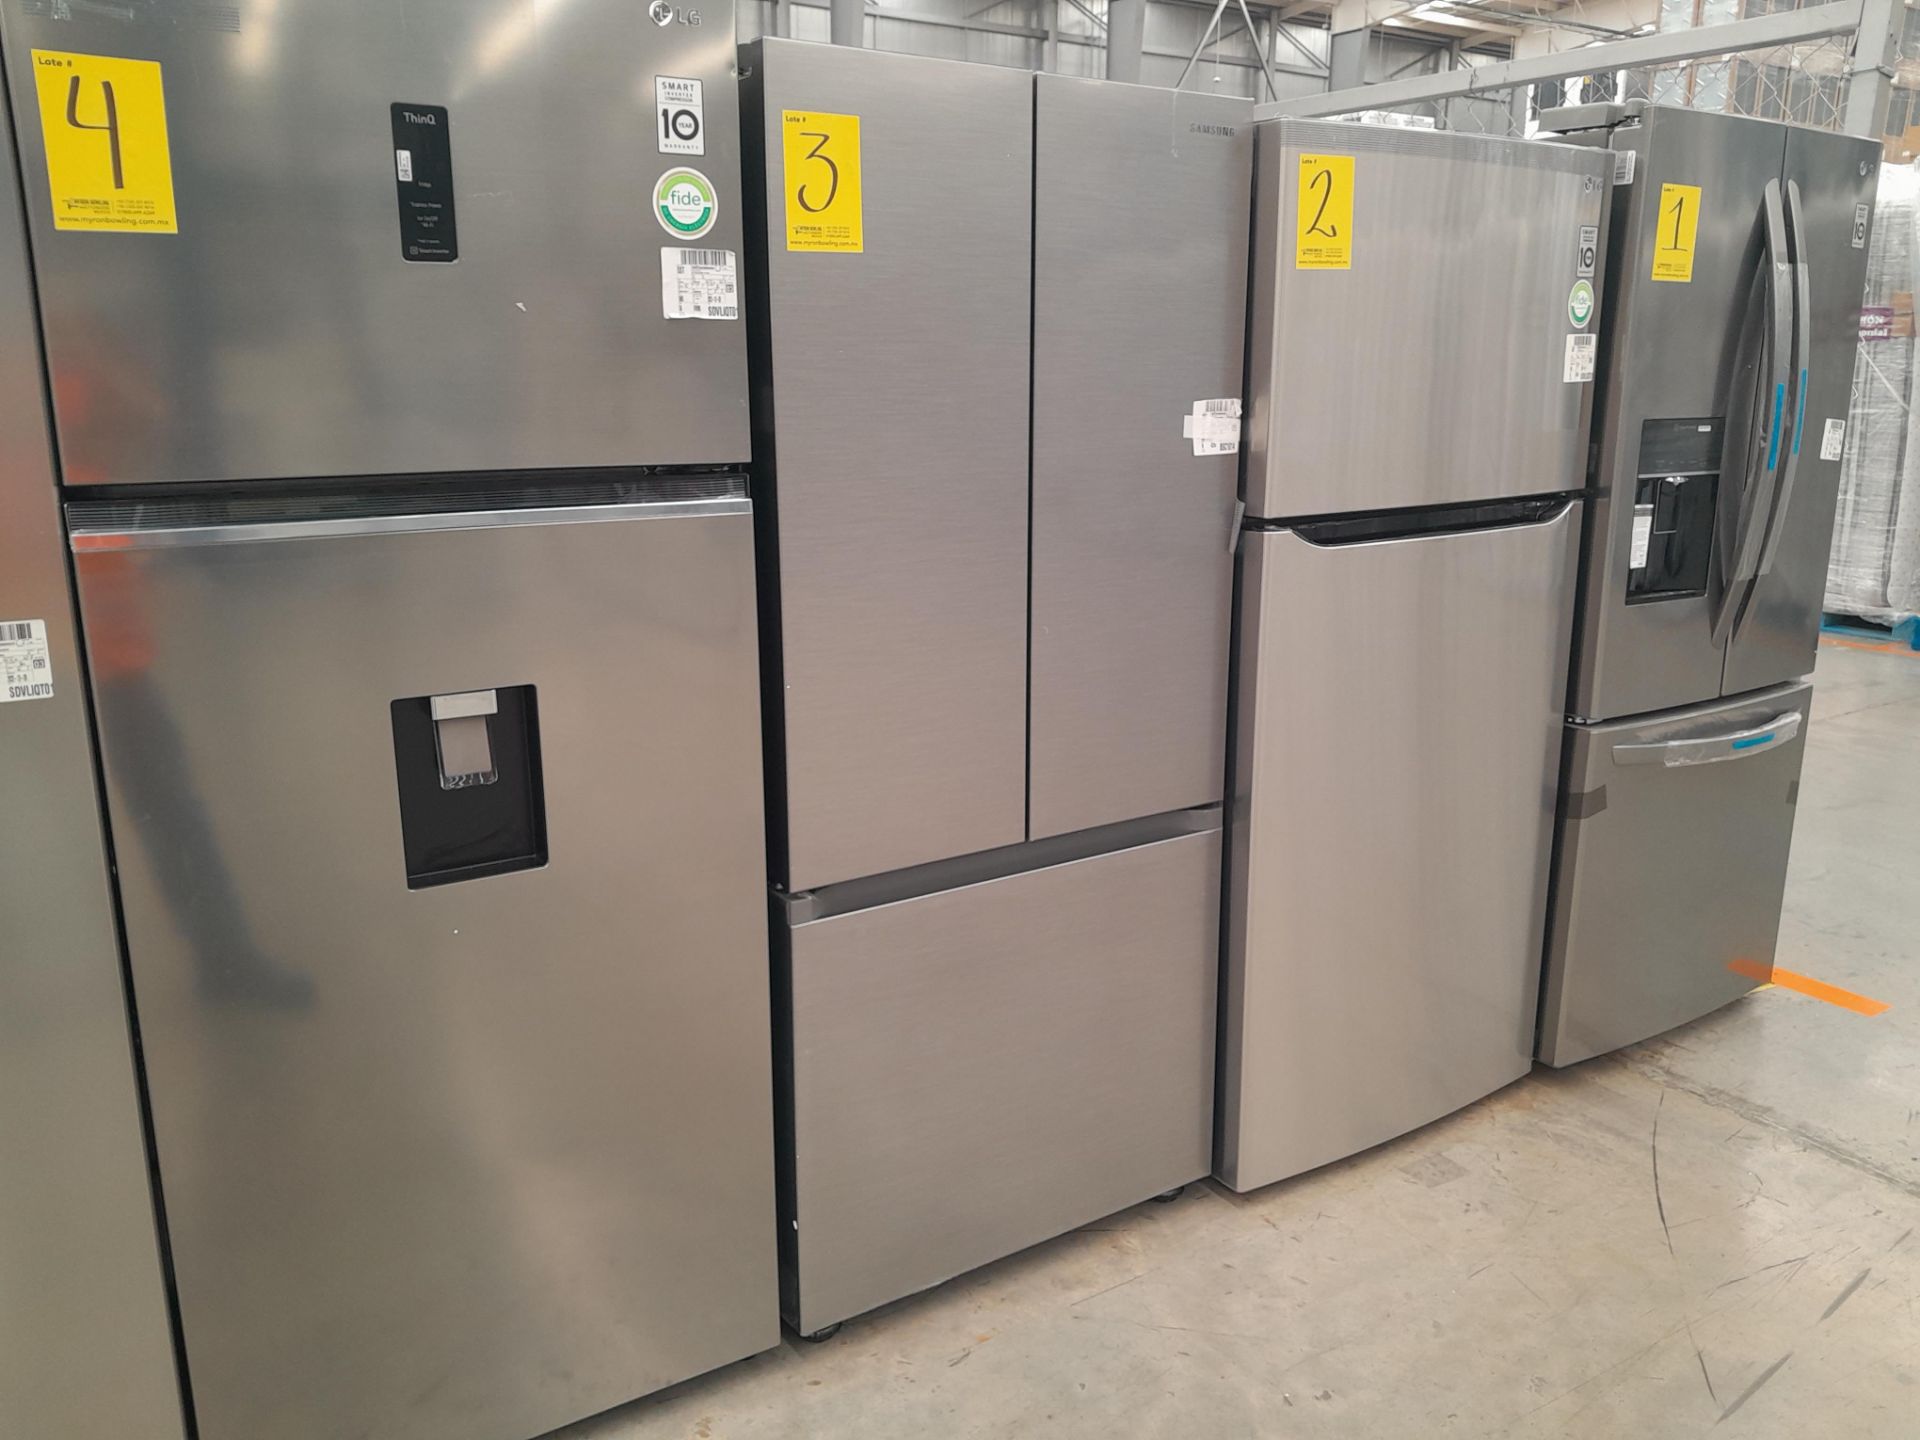 (NUEVO) Lote de 1 Refrigerador Marca SAMSUNG, Modelo RF22A4010S9, Serie 02400N, Color GRIS - Image 2 of 5